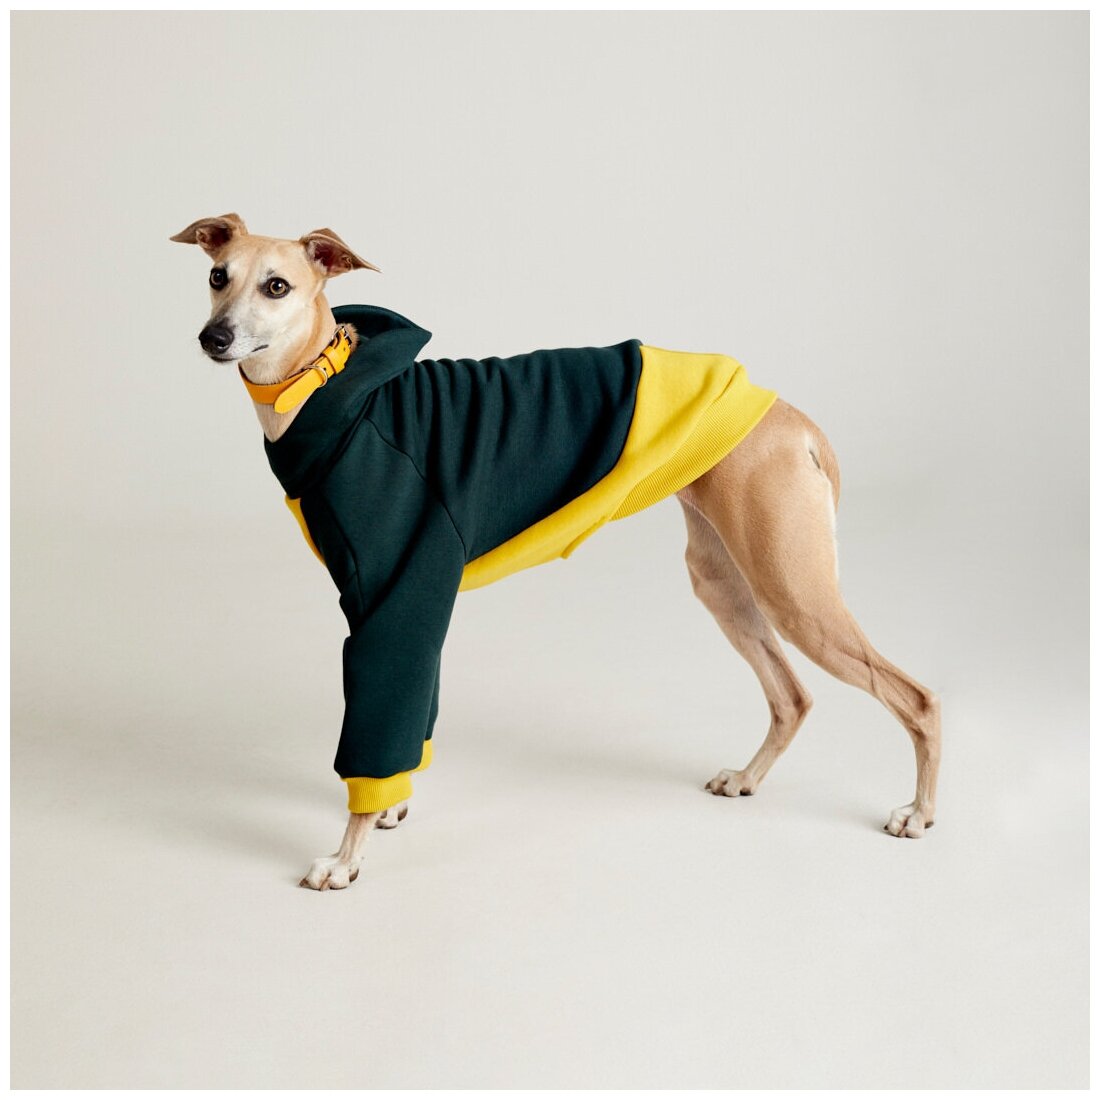 WOOFLER / Толстовка для Уиппета, худи из футера для борзых, зимняя одежда для собак мелких и средних пород, желто-зеленый М44 - фотография № 1